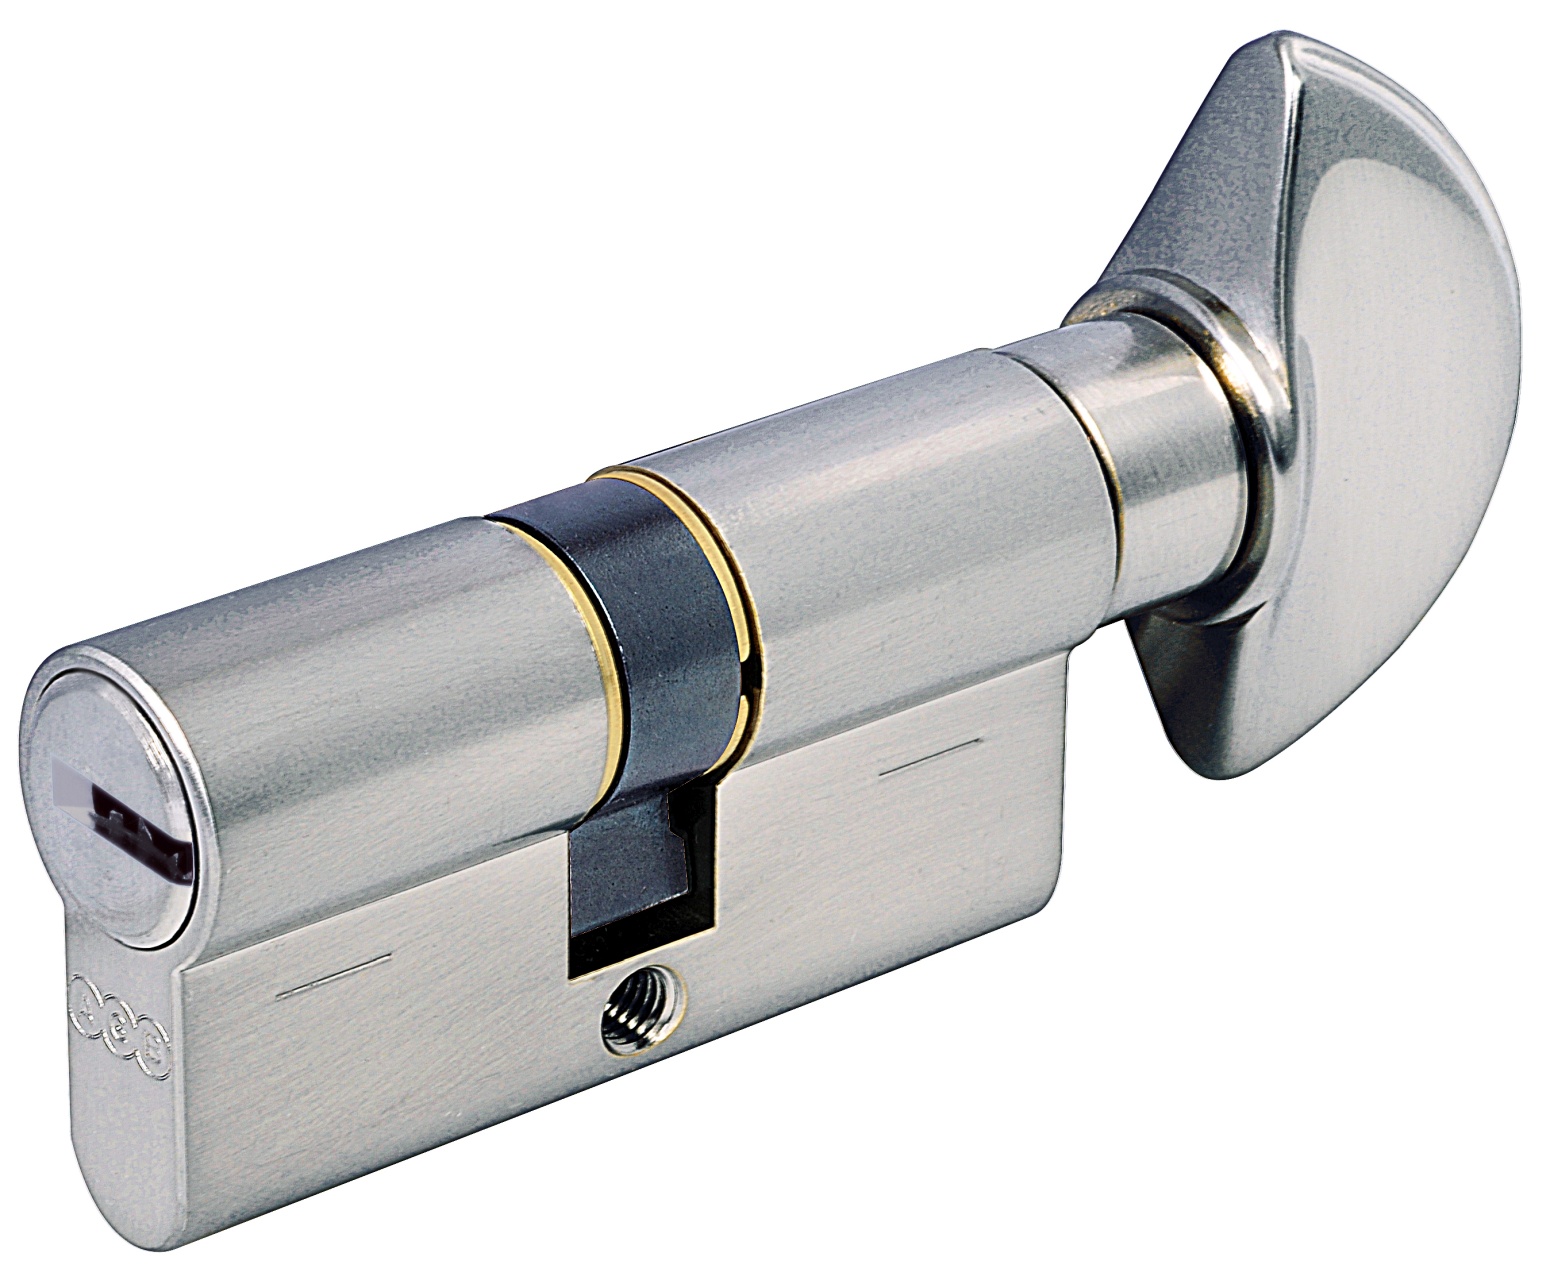 AGB -  Cilindro SCUDO 5000 PS frizionato anti bamping con chiave e pomolo - col. NICHELATO OPACO - lunghezza 90 - misura P-35-10-45